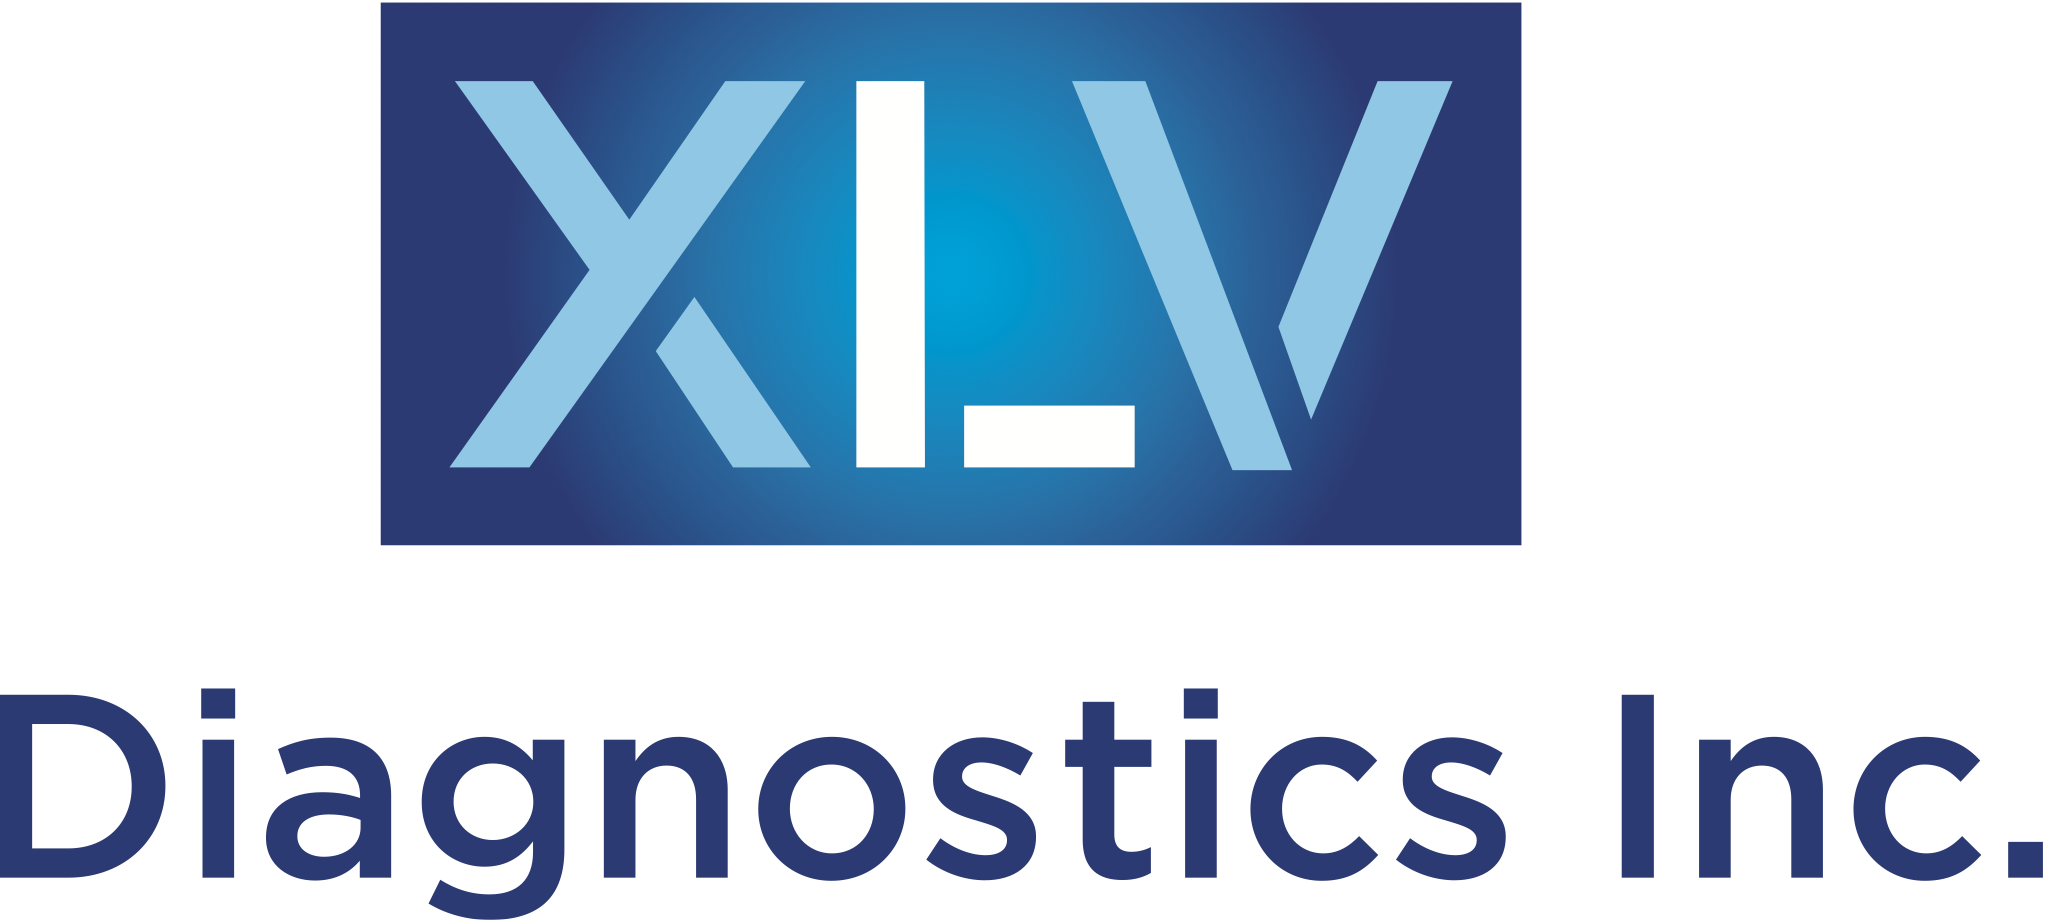 XLV Diagnostics Inc. 